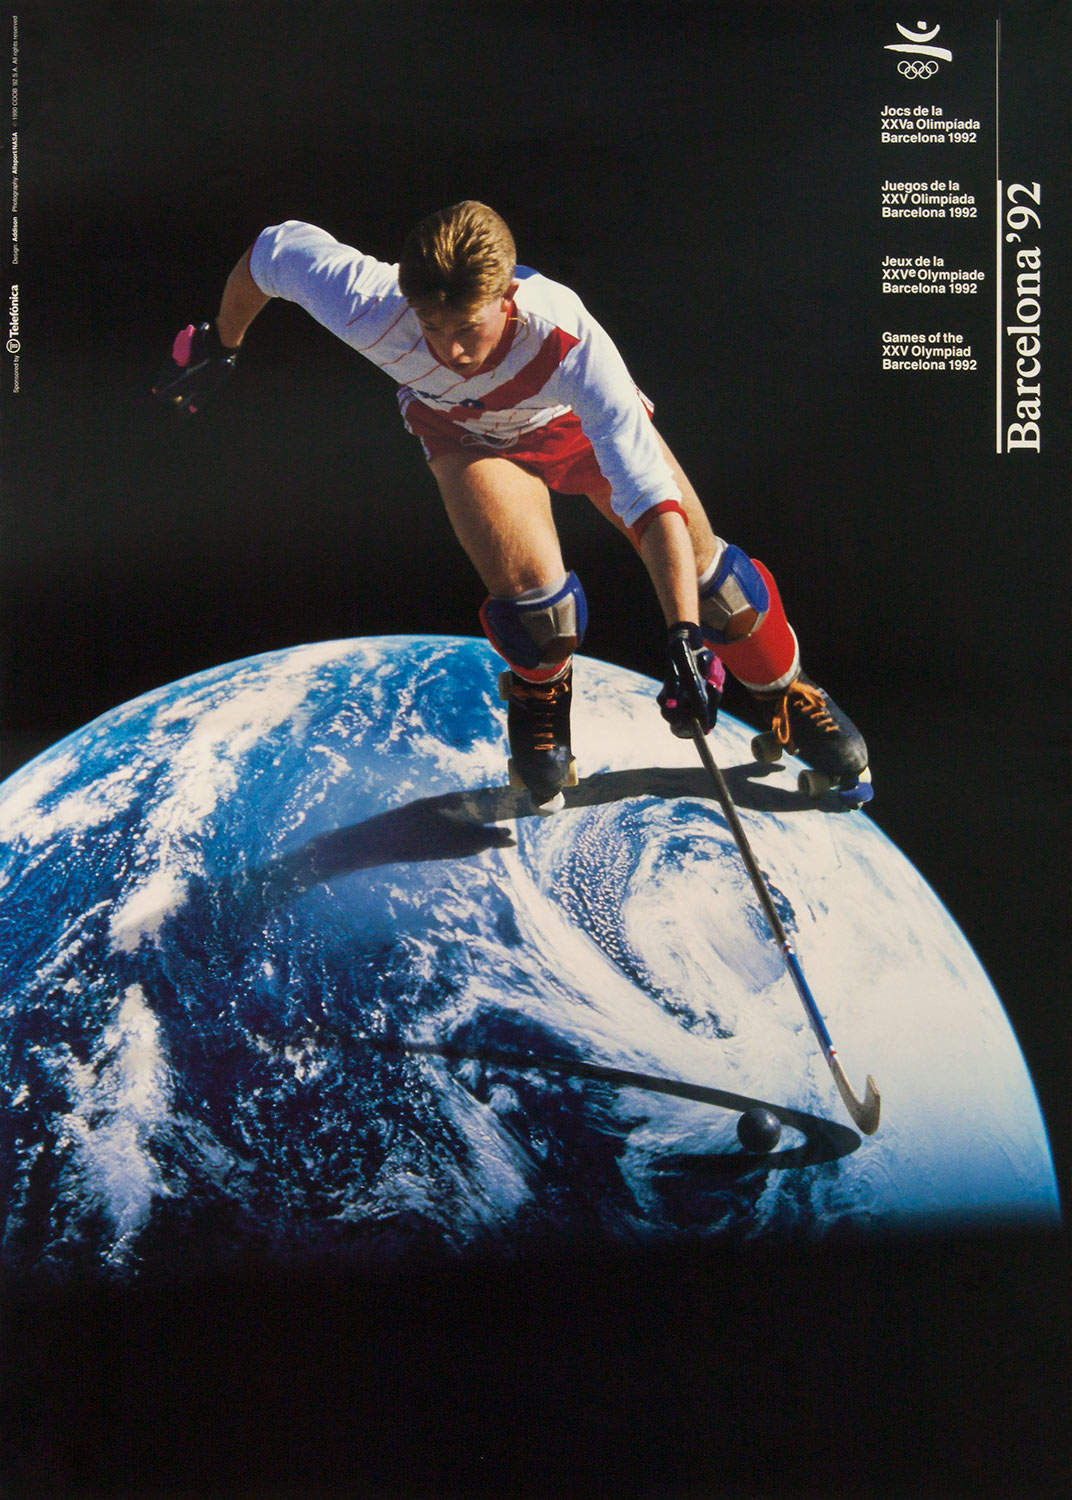 Plakat mit Abbildung eines Rollhockeyspielers. Im Hintergrund der Planet Erde